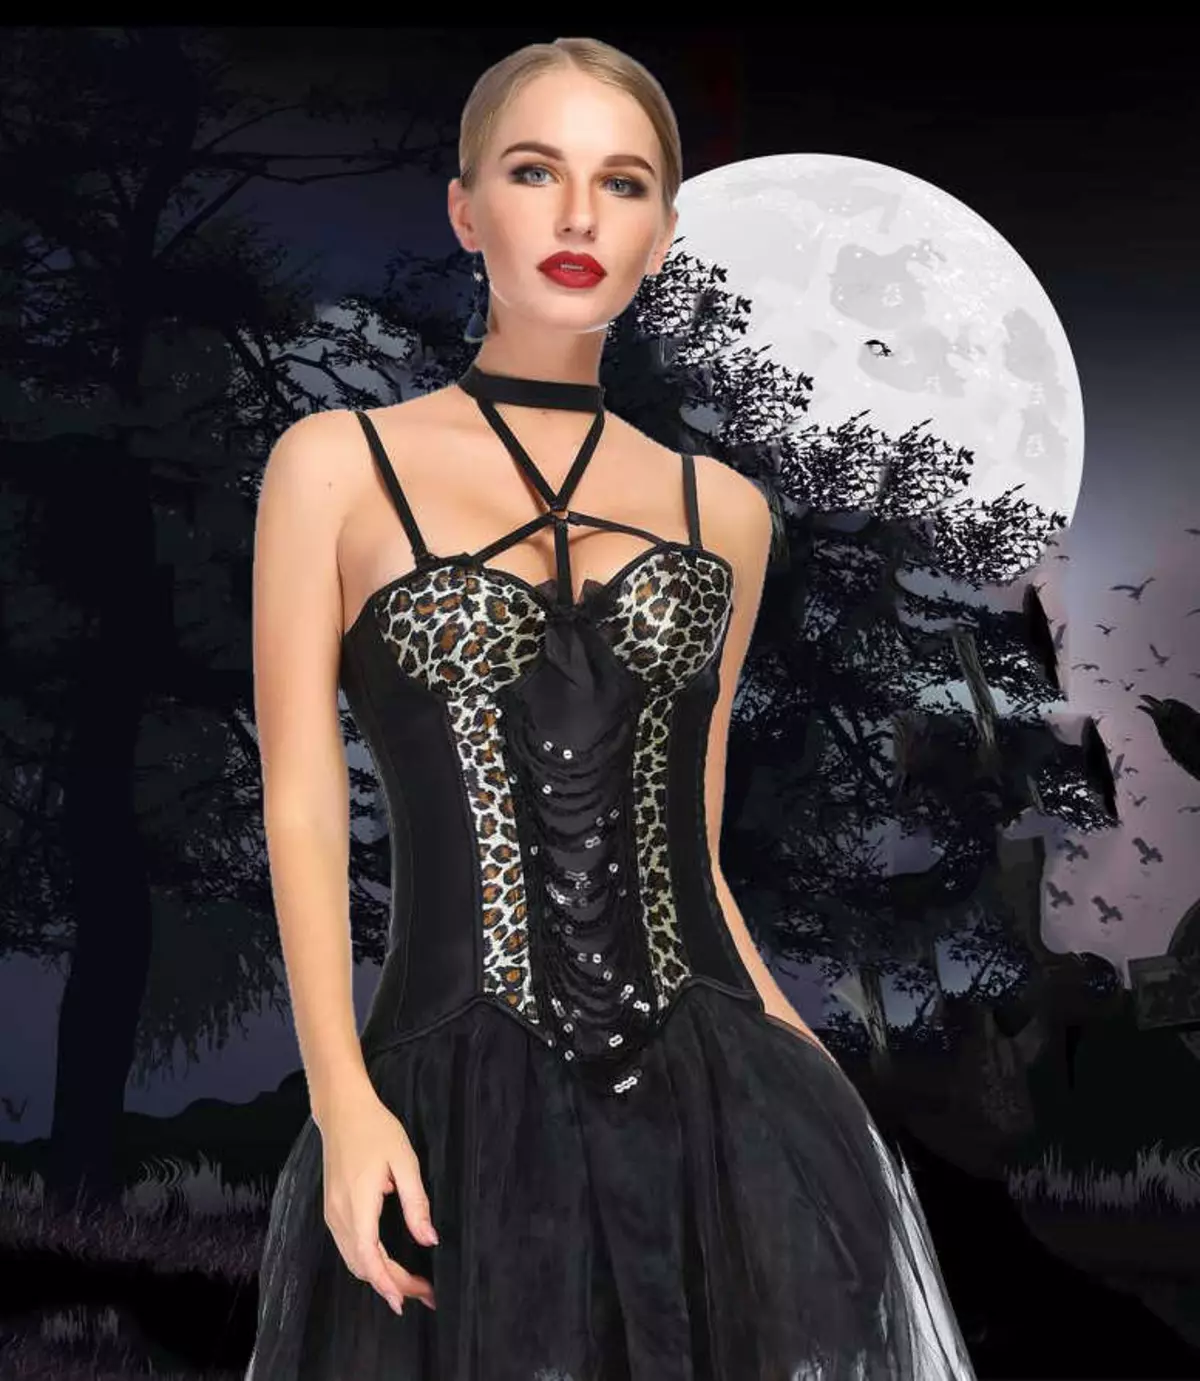 Gooti kleidid: Lolita stiilis, mustad pulmakleidid ja lühikese korsetiga lõpetamisel. Ilus näited õhtuse varustus 819_24